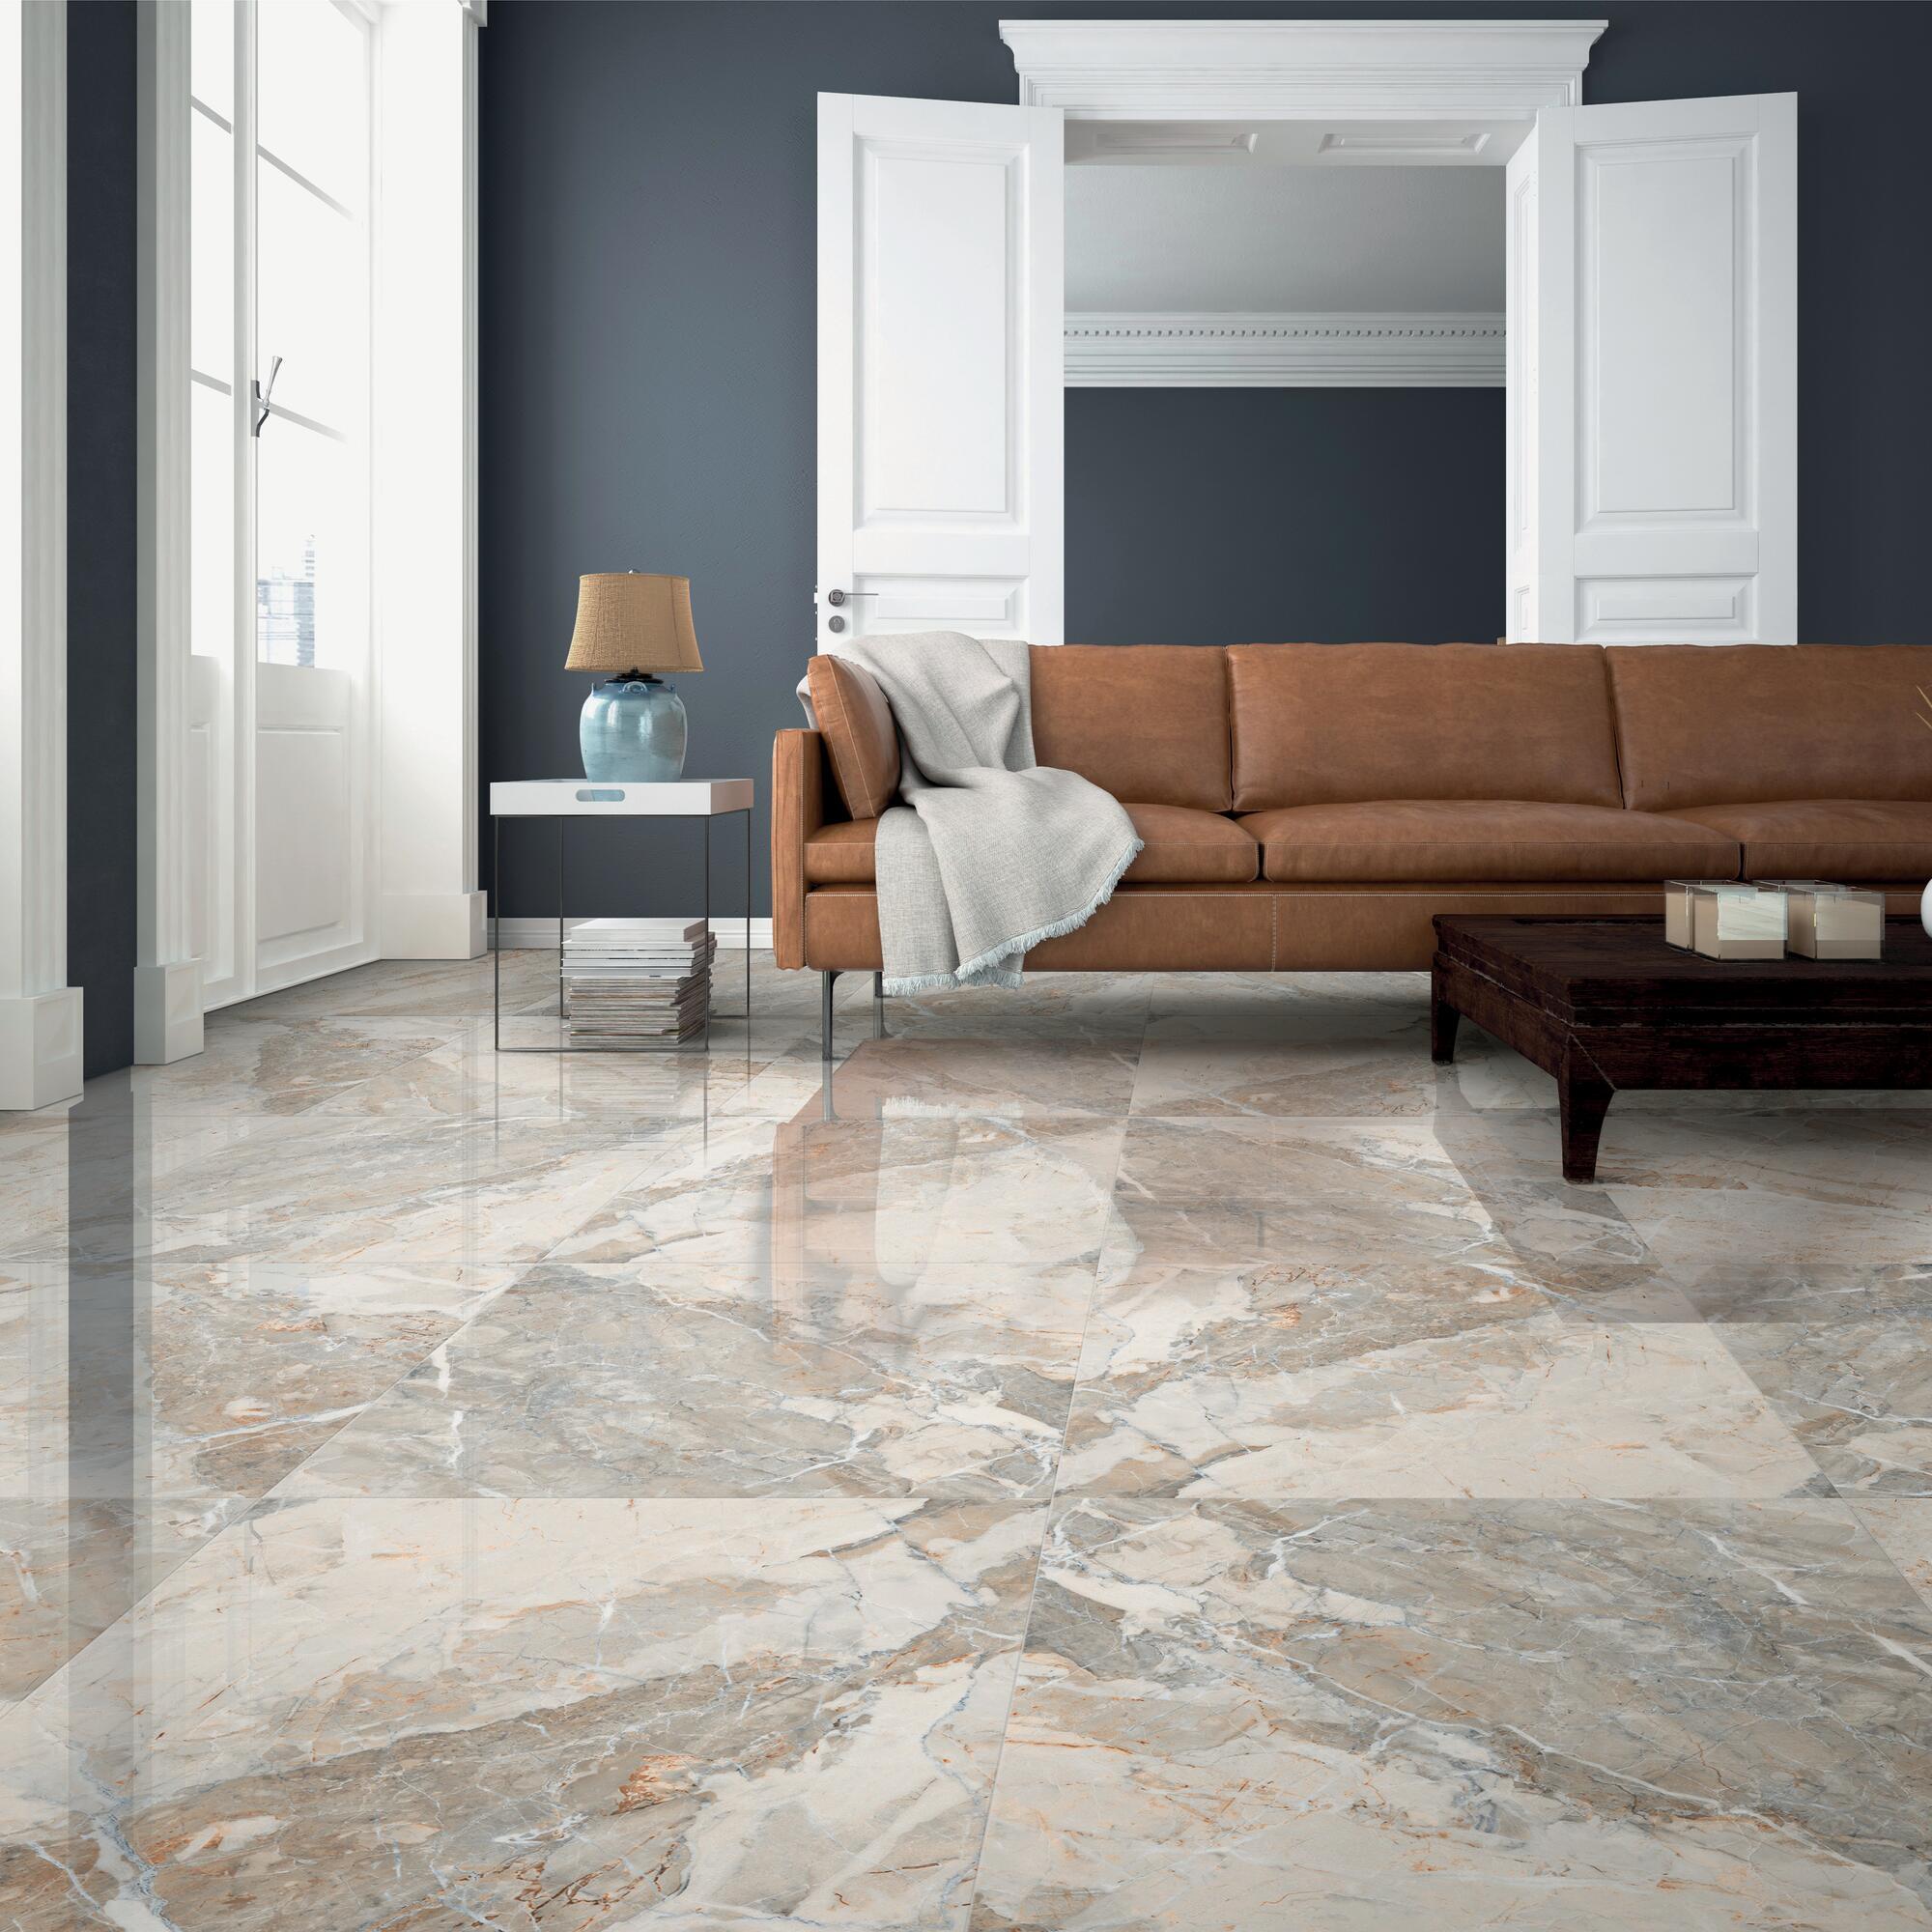 Come arredare casa con un pavimento in marmo: idee e colori per ogni stanza